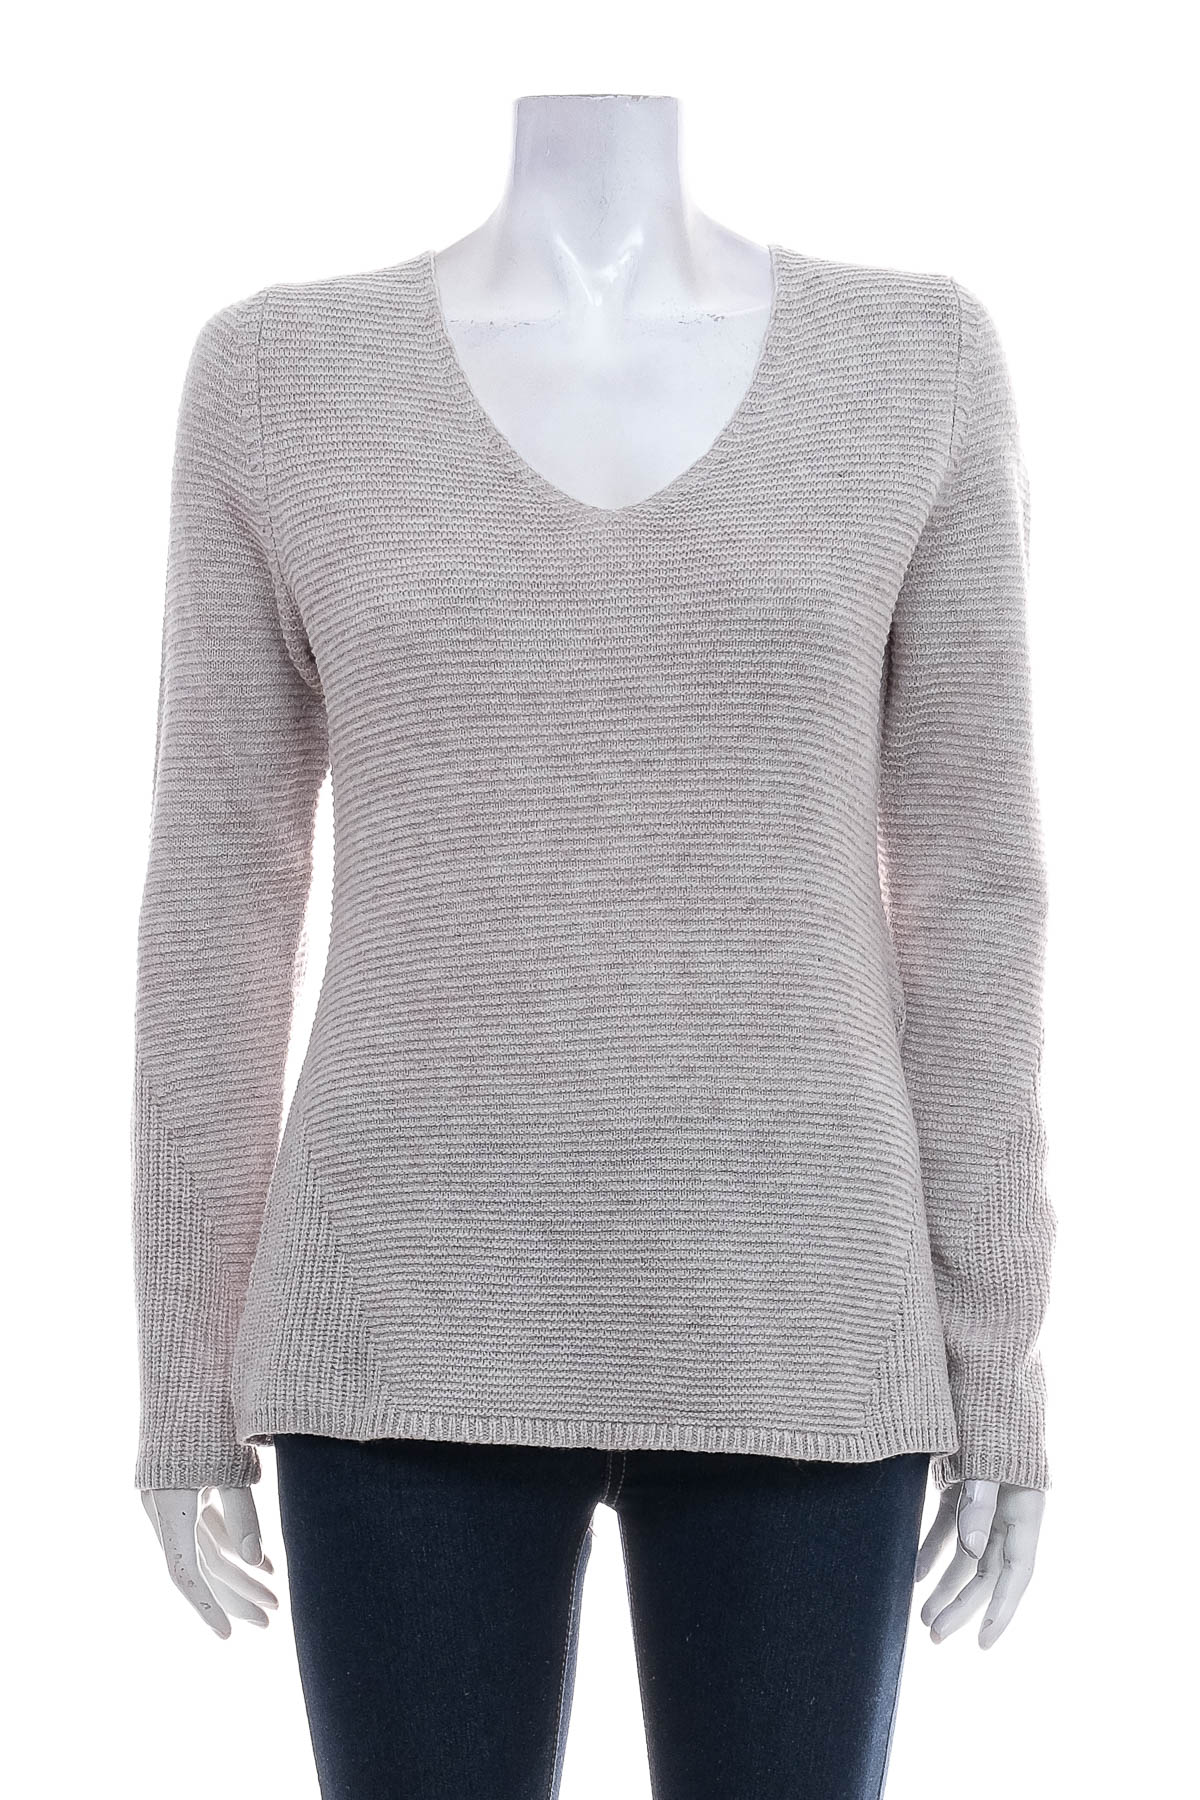 Women's sweater - Comma, - 0